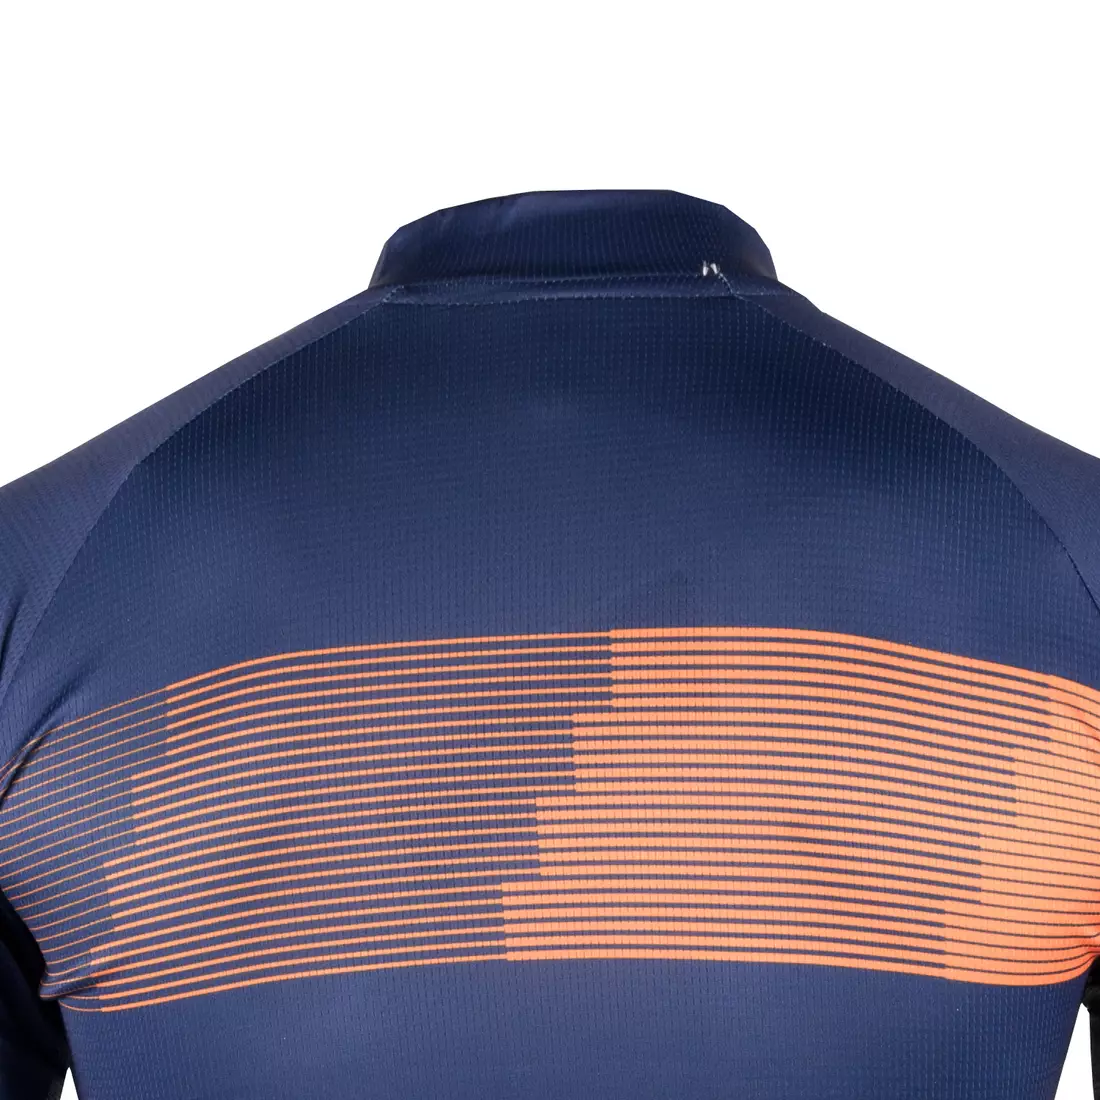 [Set] DEKO STYLE-0421 pánsky cyklistický dres s krátkym rukávom, námornícka modrá + DEKO POCKET pánske cyklistické kraťasy, čierna